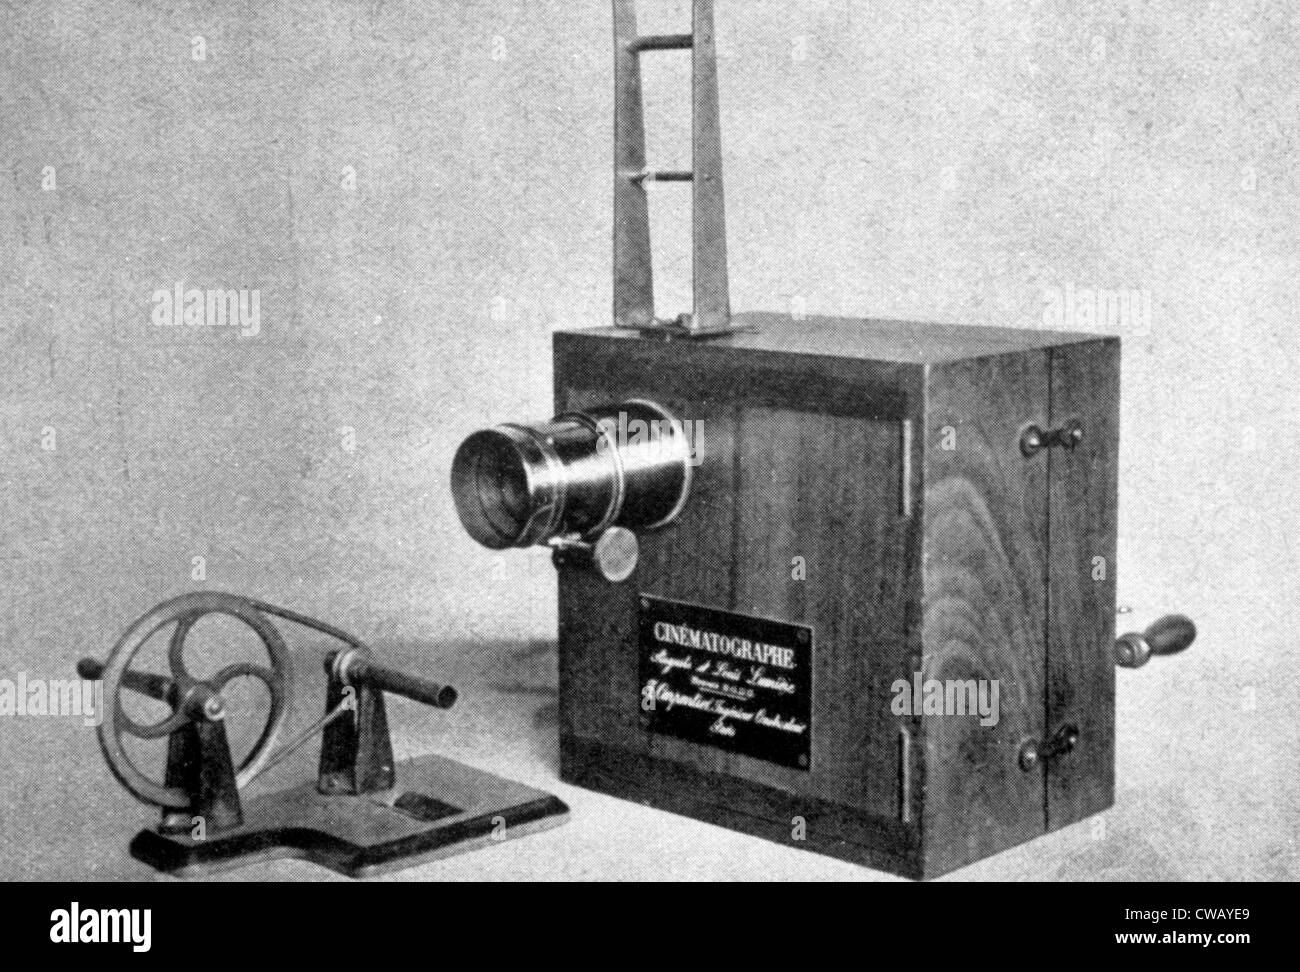 La lumiere Cinematographe, inventé et démontré par Jean Louis et Auguste Lumière en 1895 Banque D'Images